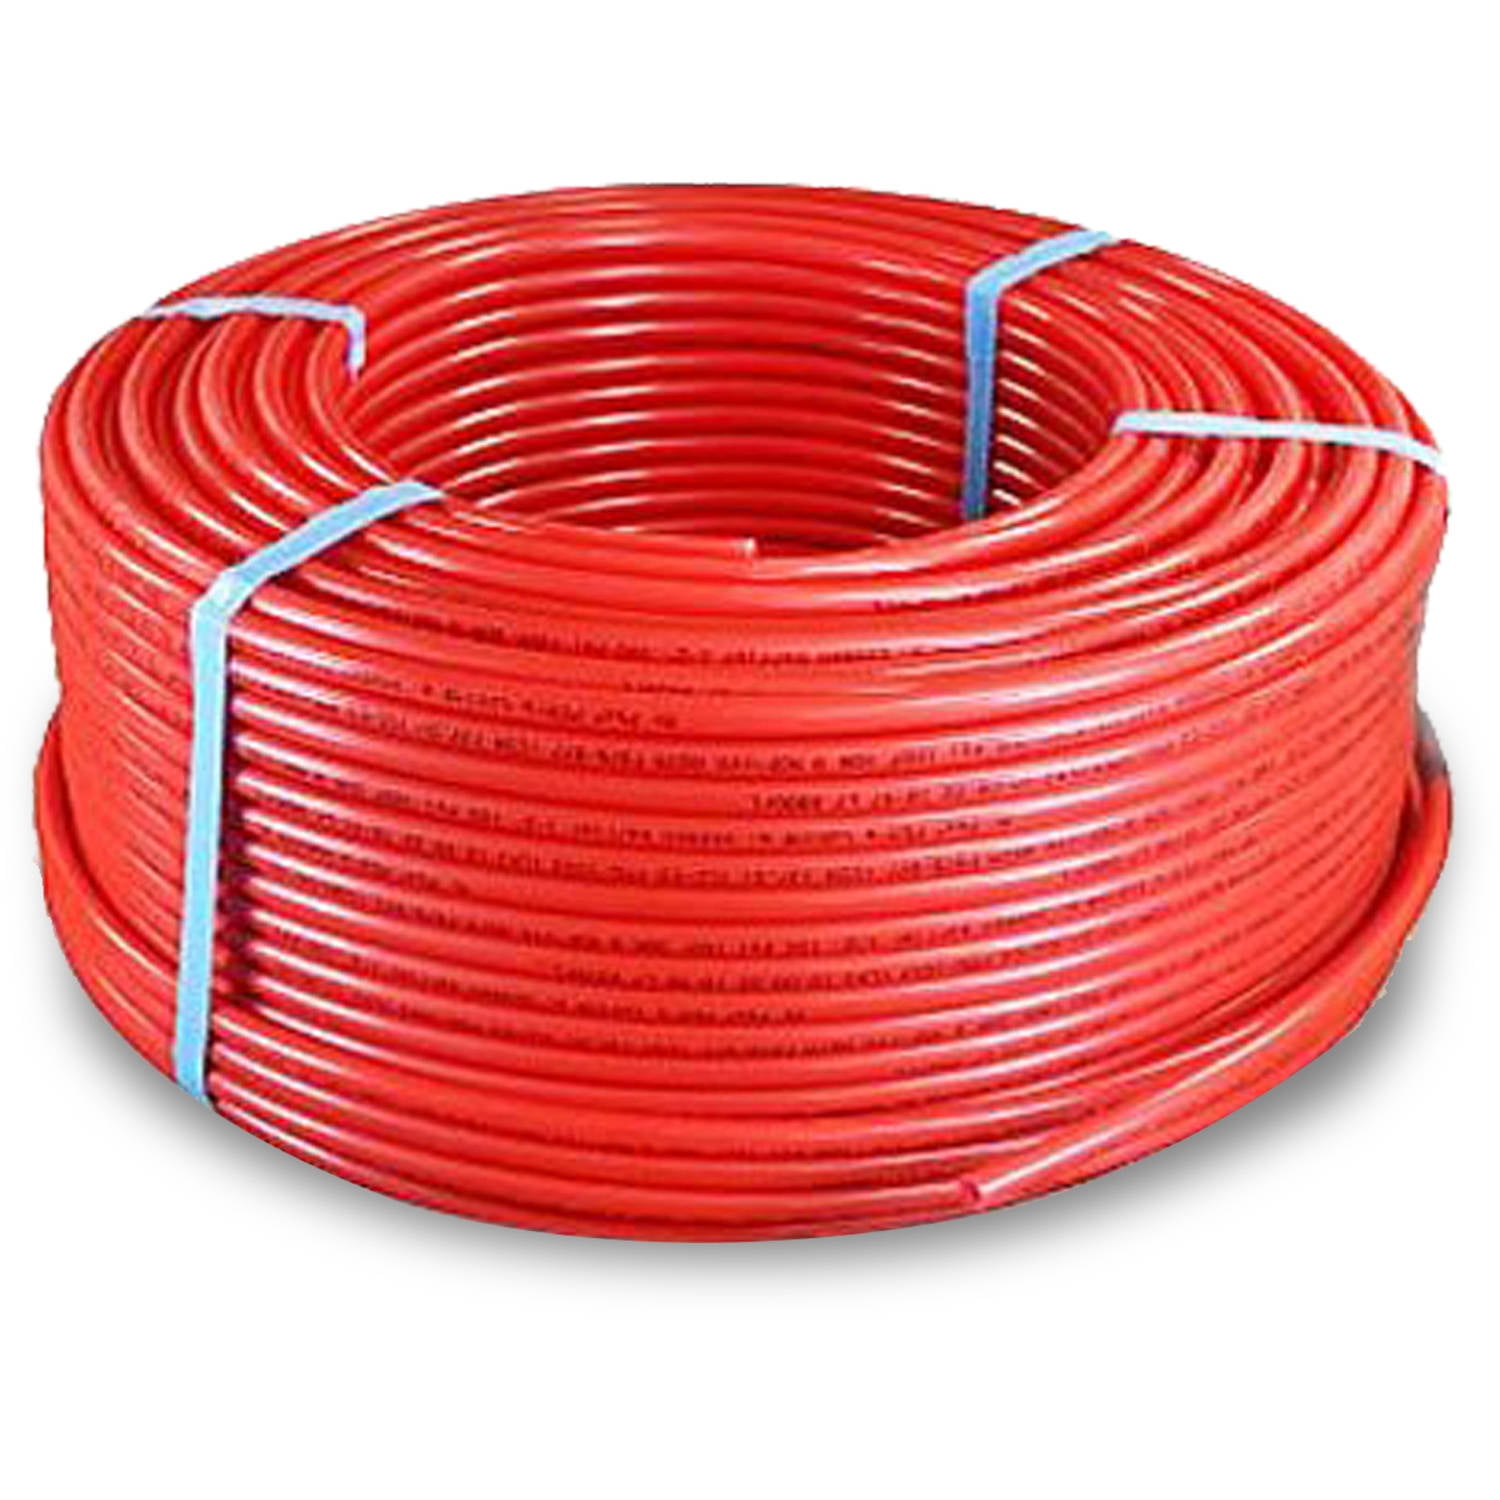 Red 3/4 Inch x 100 Feet Pexflow PFR-R34100 Oxygen Barrier PEX Tubing 